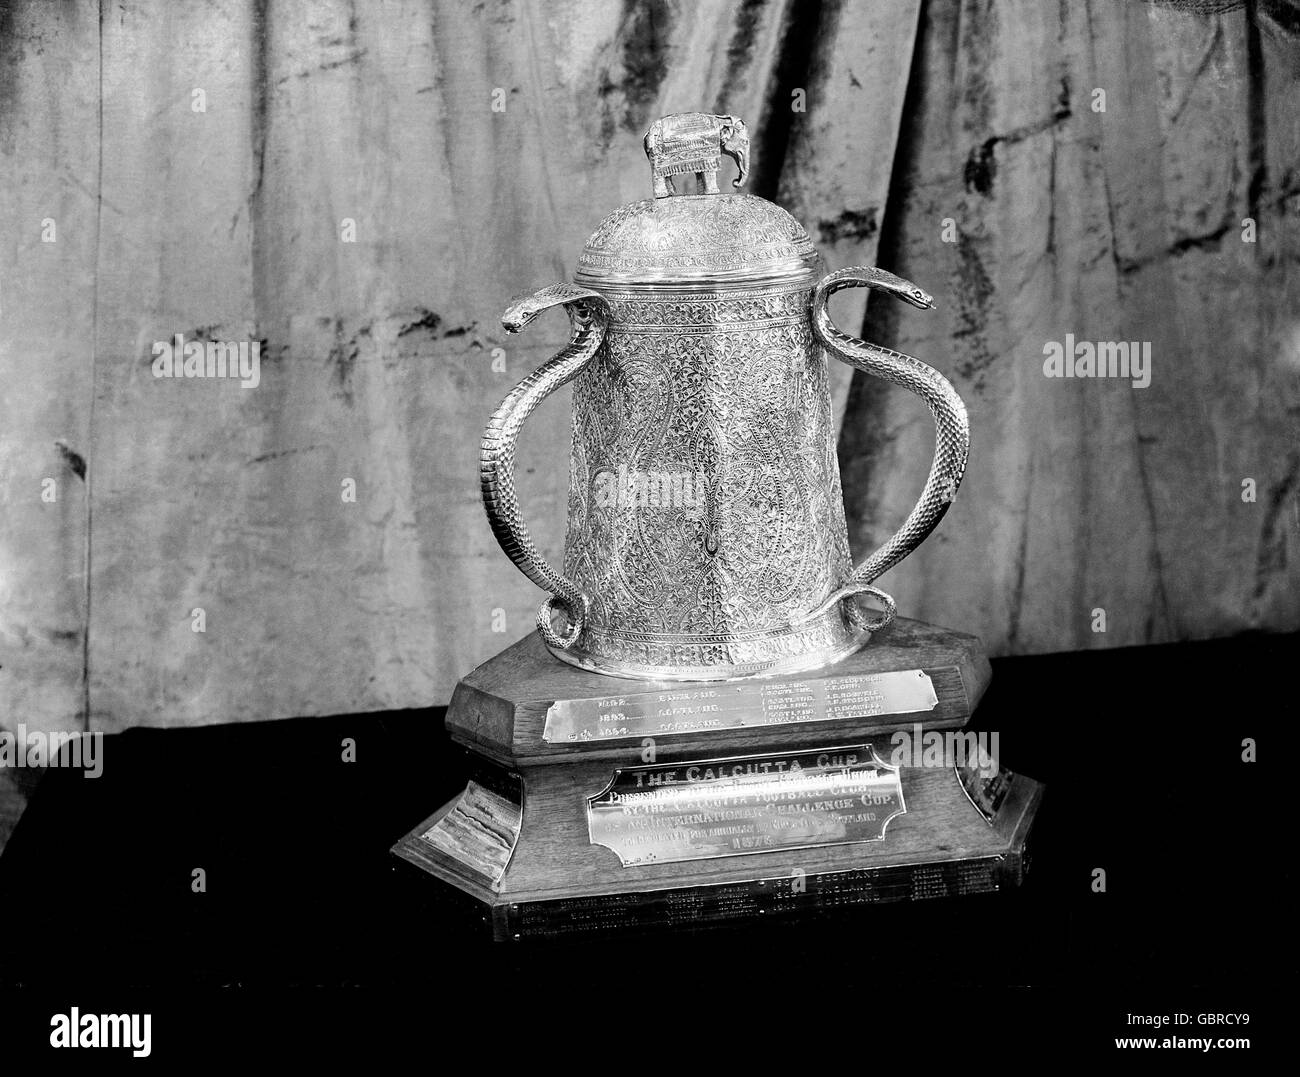 Der Calcutta Cup. Die älteste Trophäe in der Geschichte des internationalen Rugbys, die 1878 im Calcutta Rugby and Cricket Club in der Stadt, die heute als Kalkutta bekannt ist, aus Indien stammte. Die Trophäe wurde aus 13 silbernen indischen Rupien gewonnen, die nach dem Untergang des Vereins eingeschmolzen wurden. Es wurde dann an die RFU als Preis an den Gewinner der Spiele England gegen Scotlands angeboten. Das erste Spiel im Calcutta Cup fand 1879 statt. Stockfoto